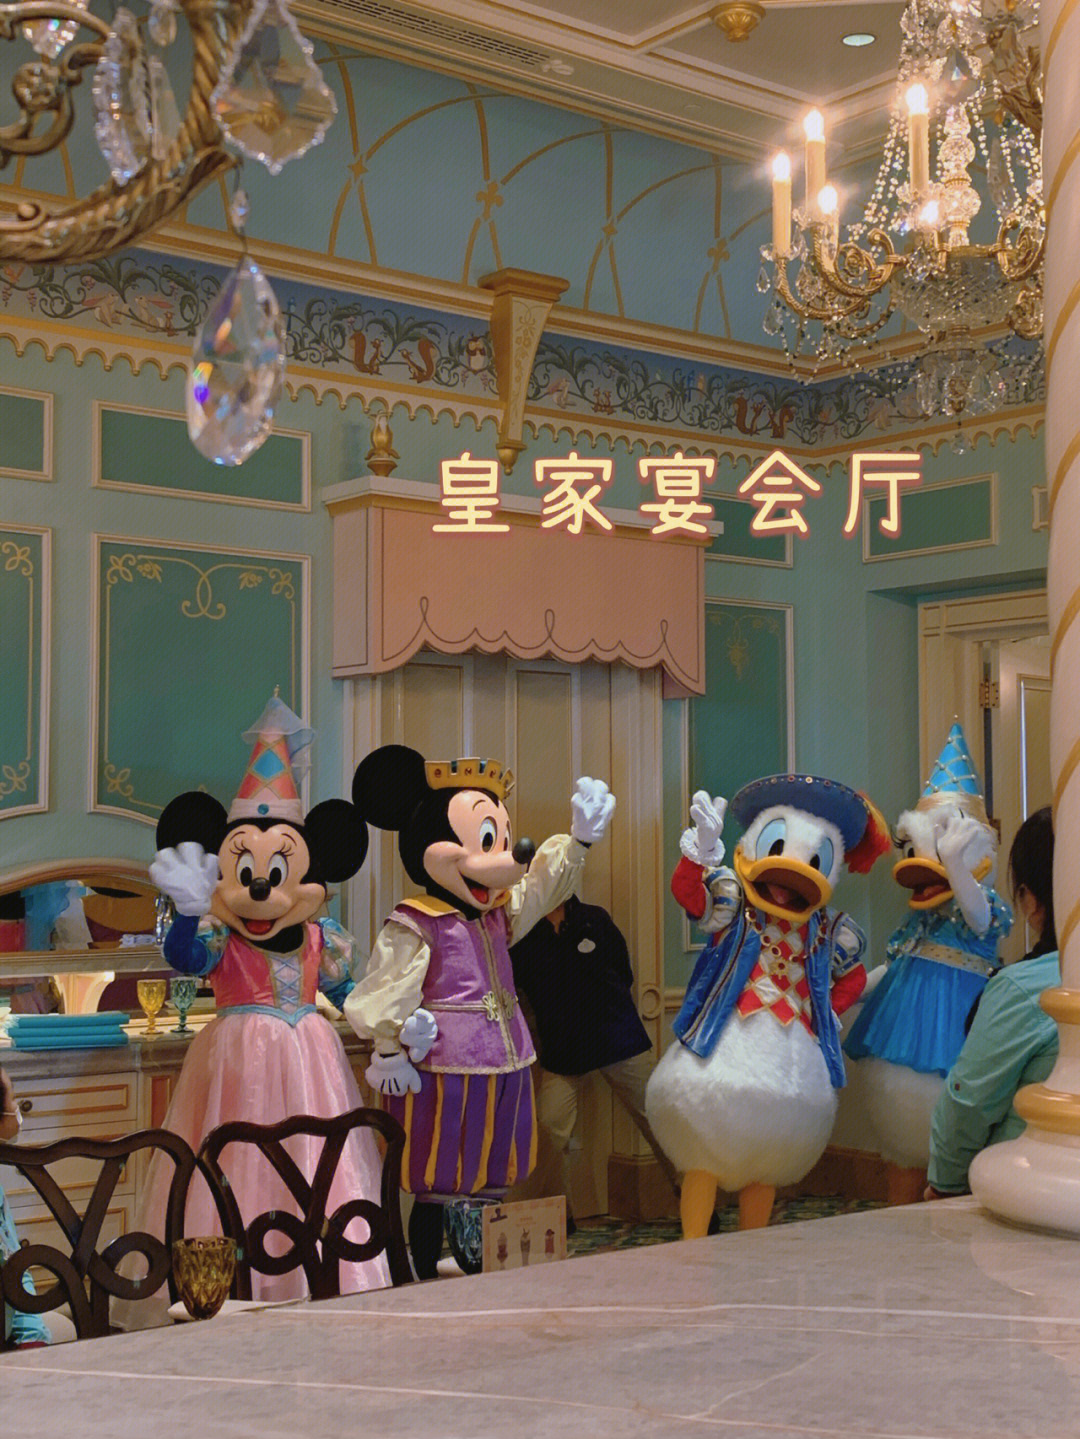 迪士尼皇家宴会厅图片